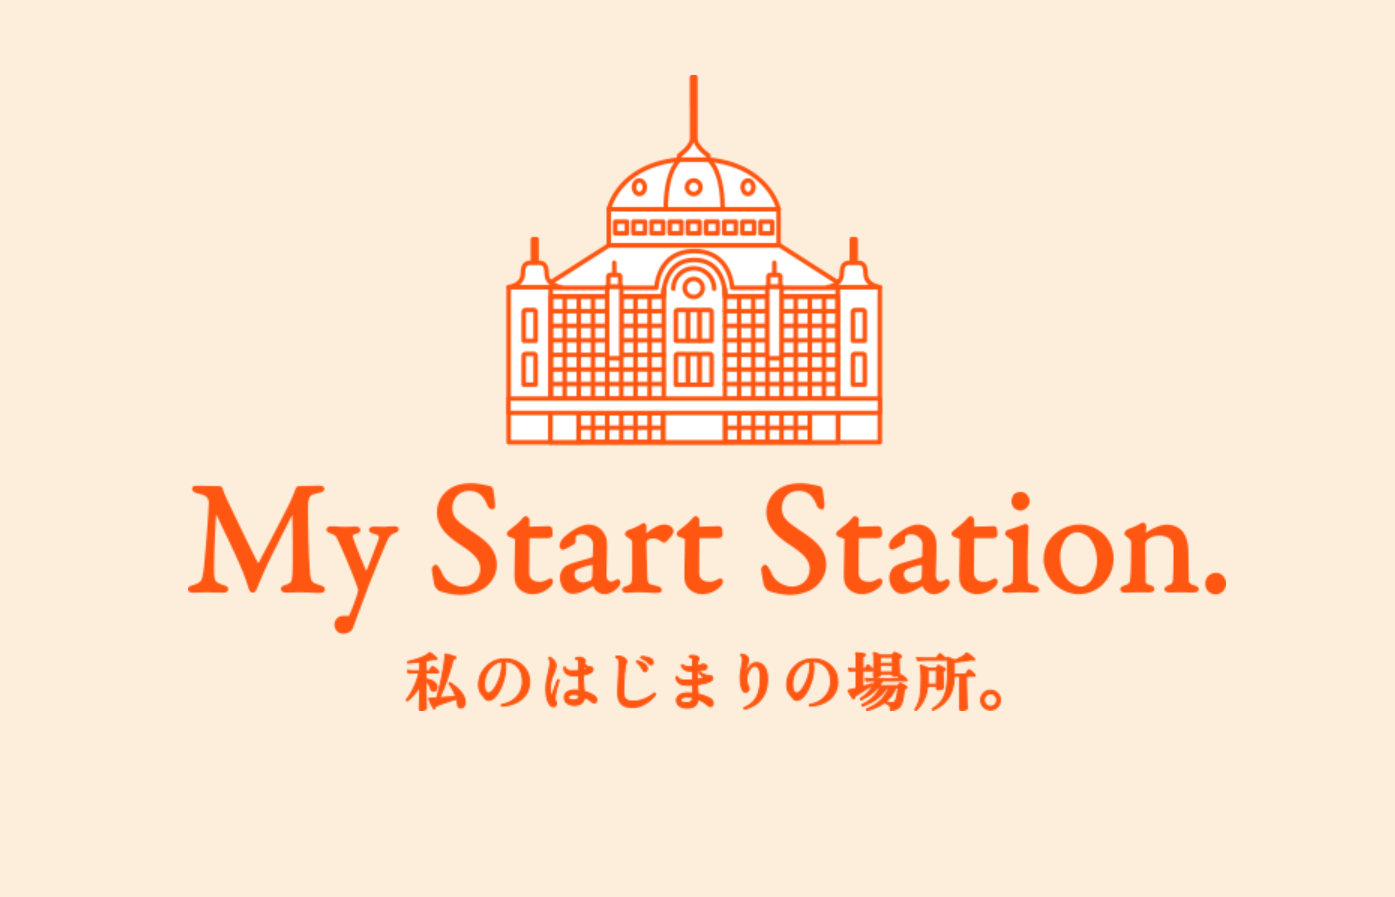 ニコライ・バーグマン　東京ステーションシティ「私のはじまりの場所。」の広告に出演